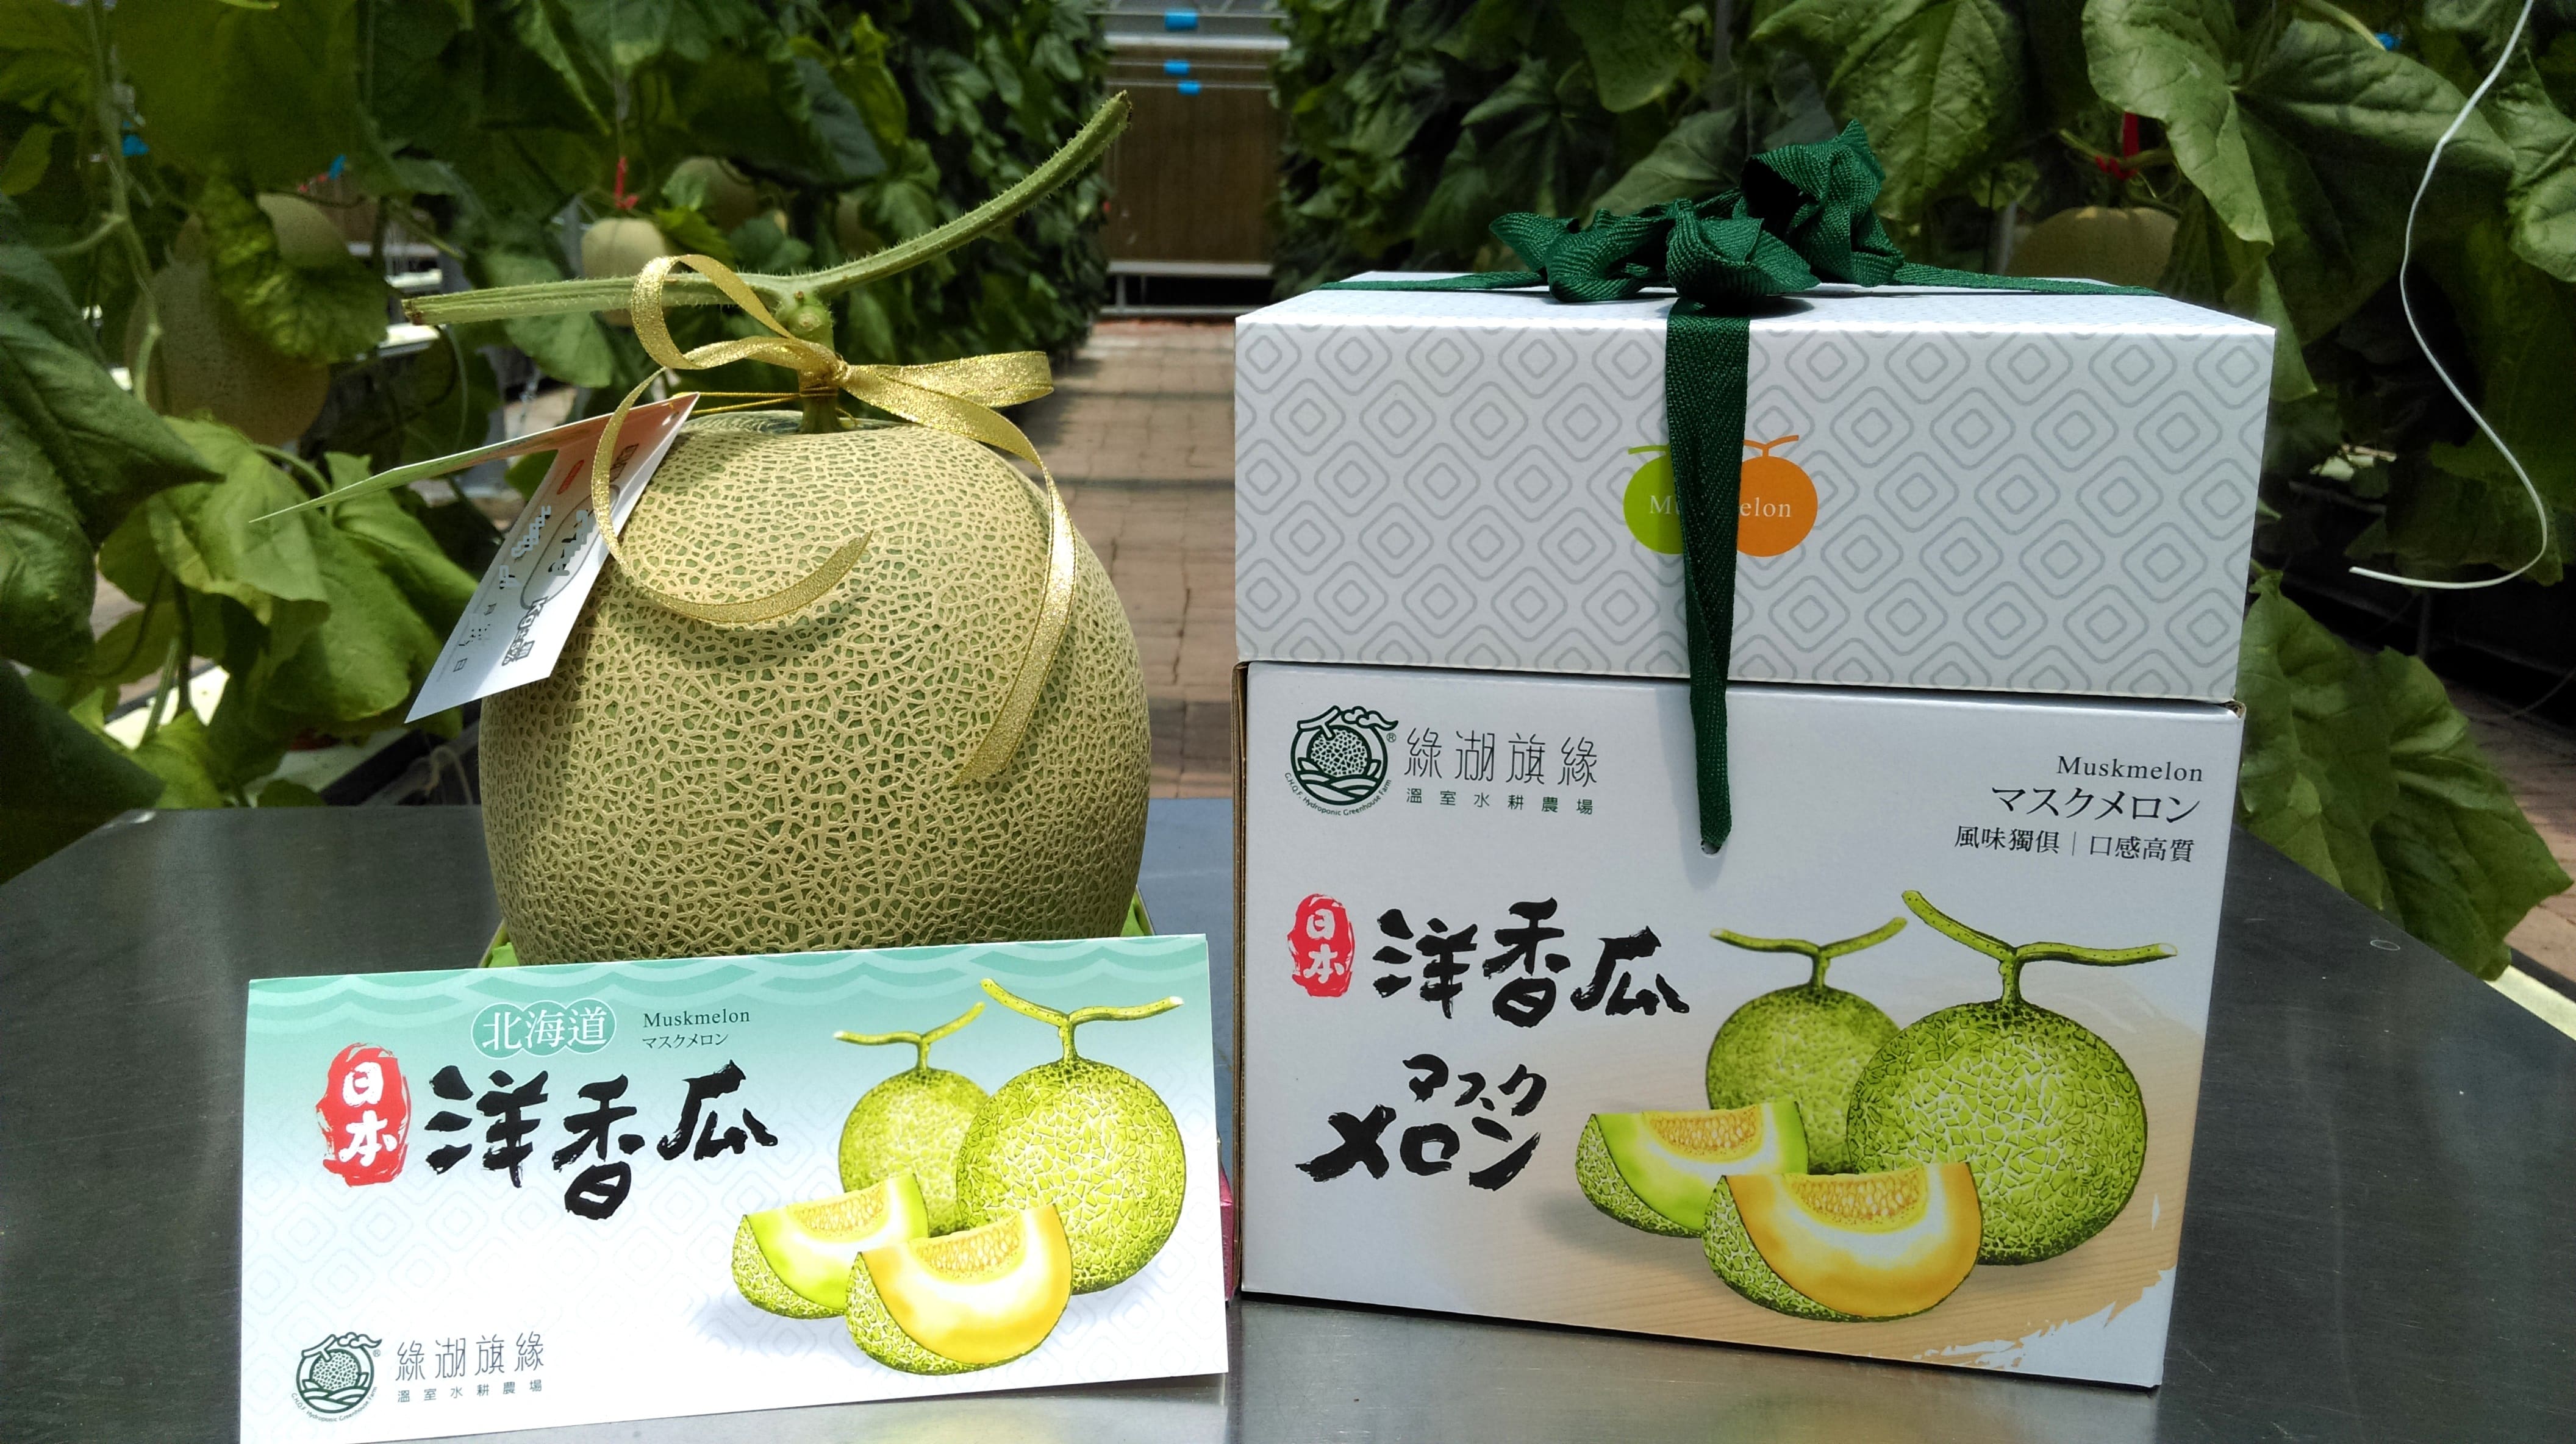 綠湖旗緣溫室農場 日本網紋洋香瓜專賣